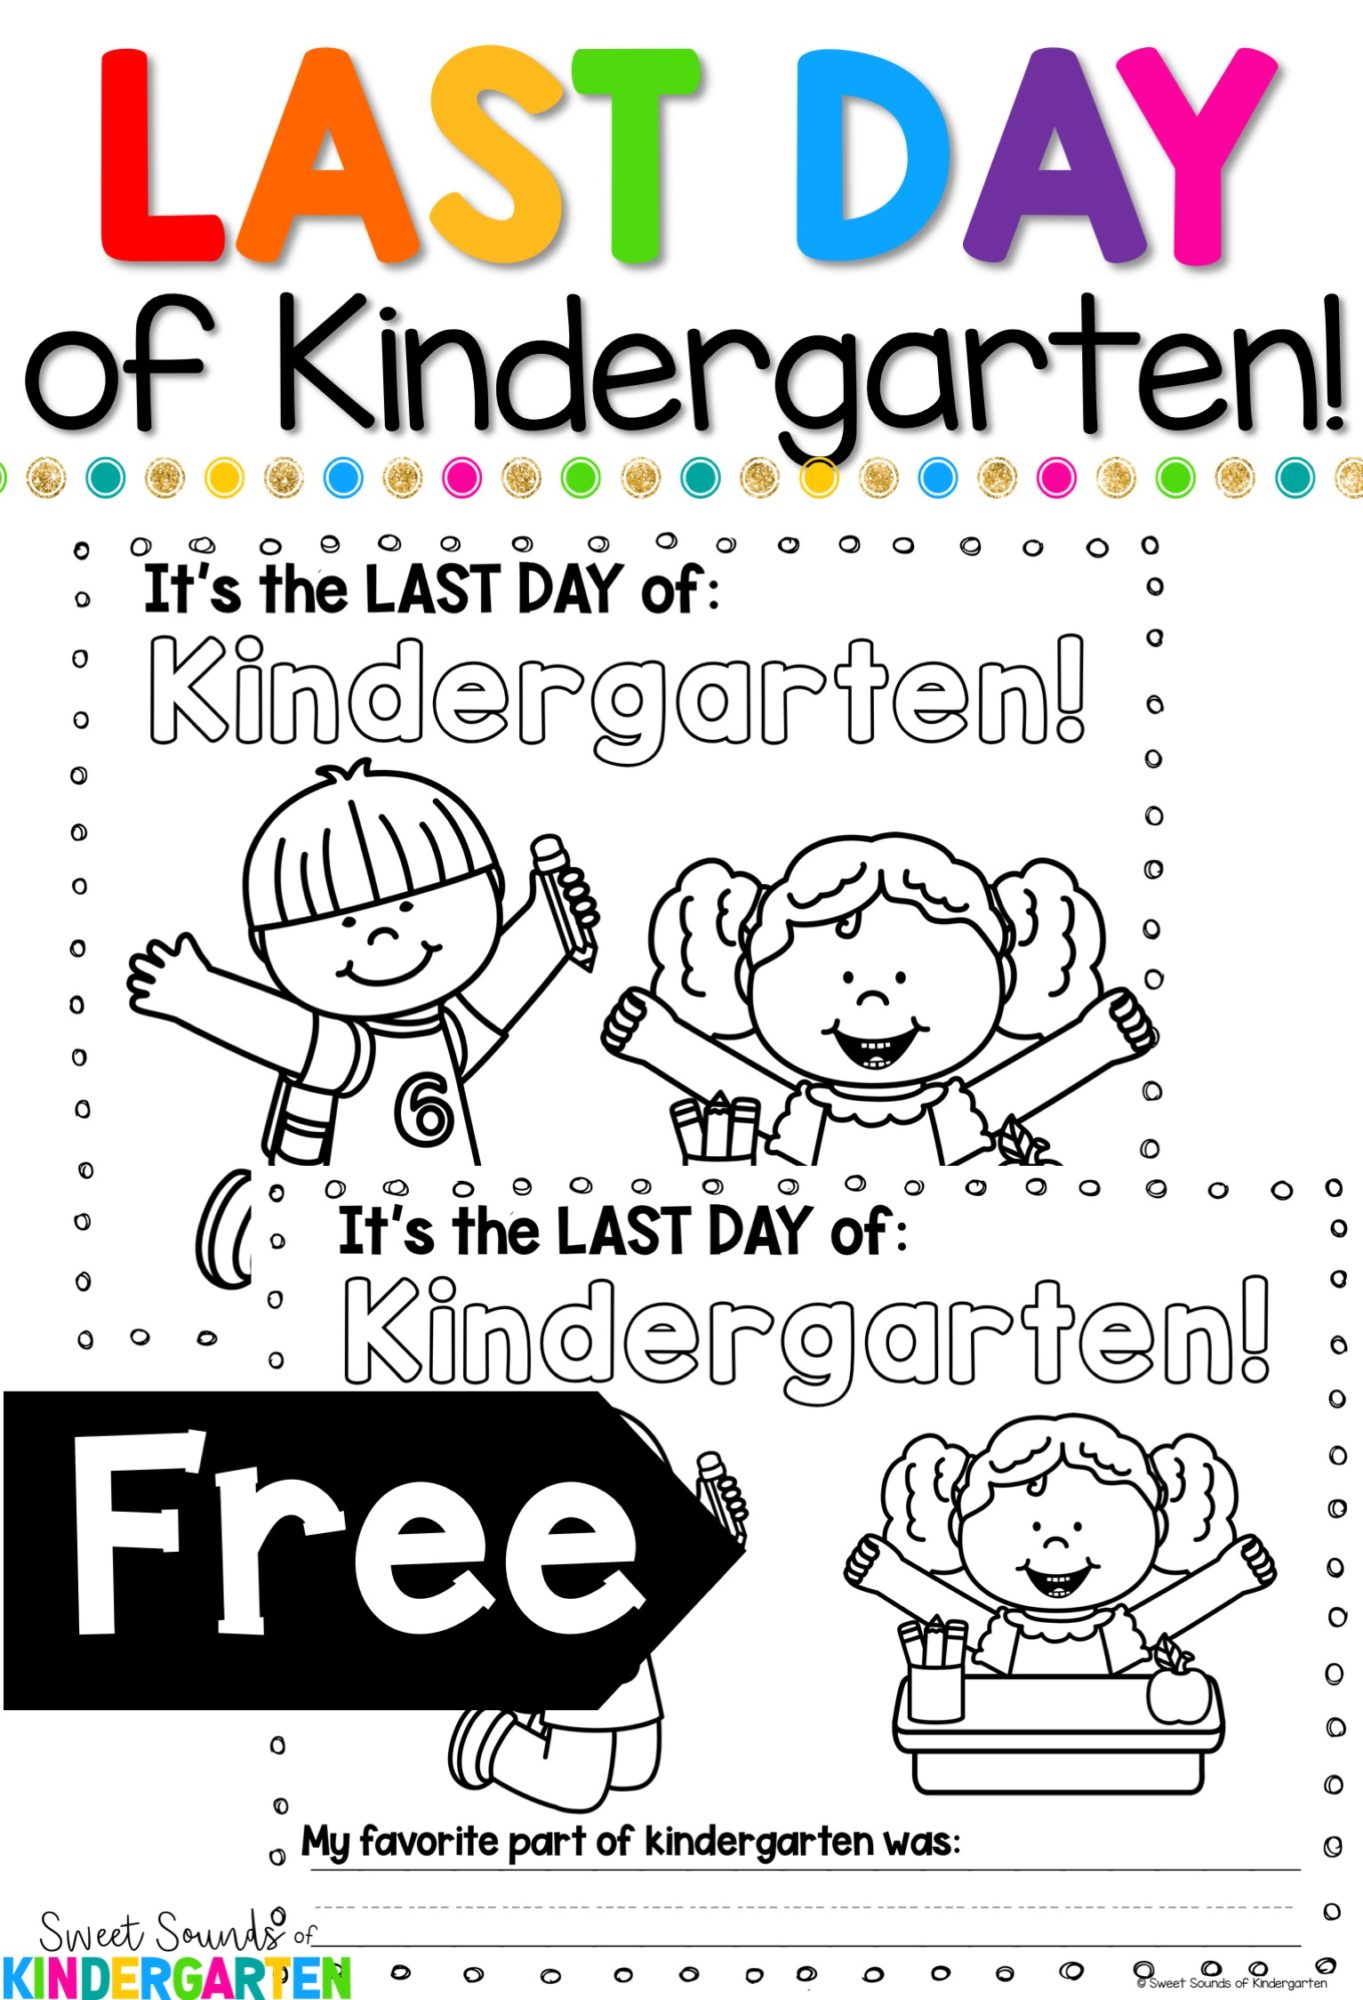 Of freebie . June clipart last day kindergarten